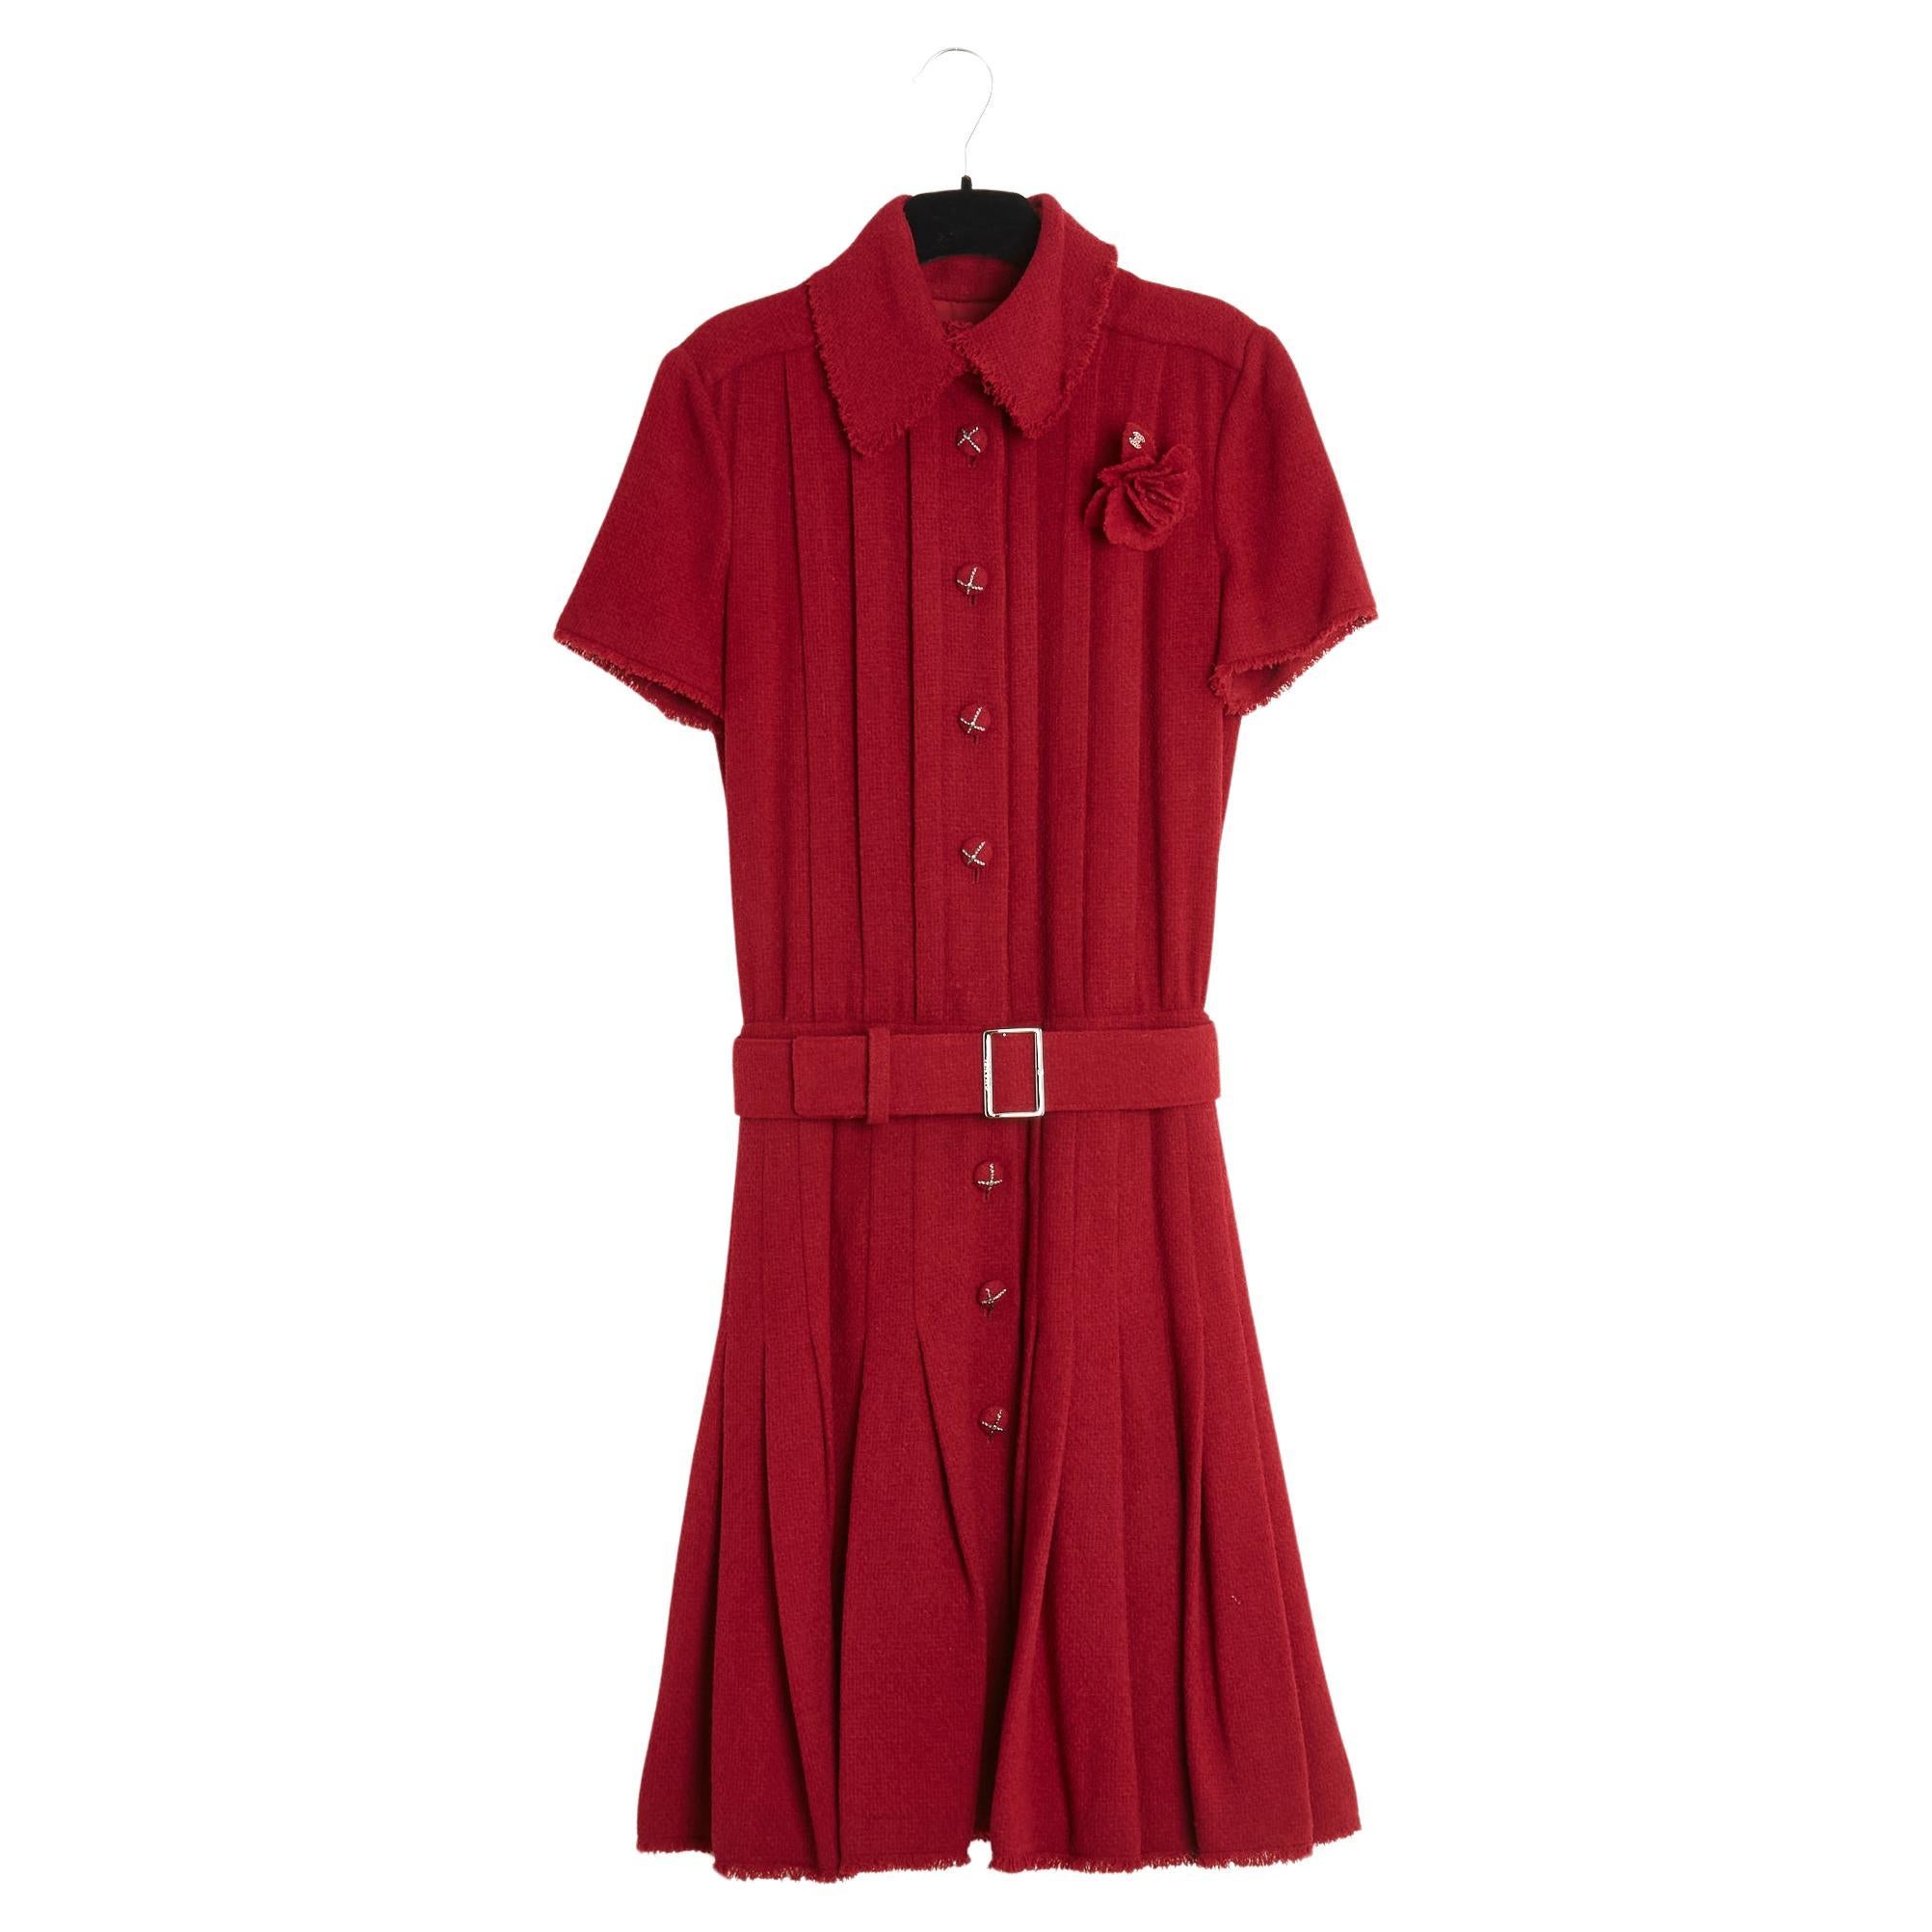 FW2007 Chanel Red Bouclette Wool Dress FR36 Belt Brooch